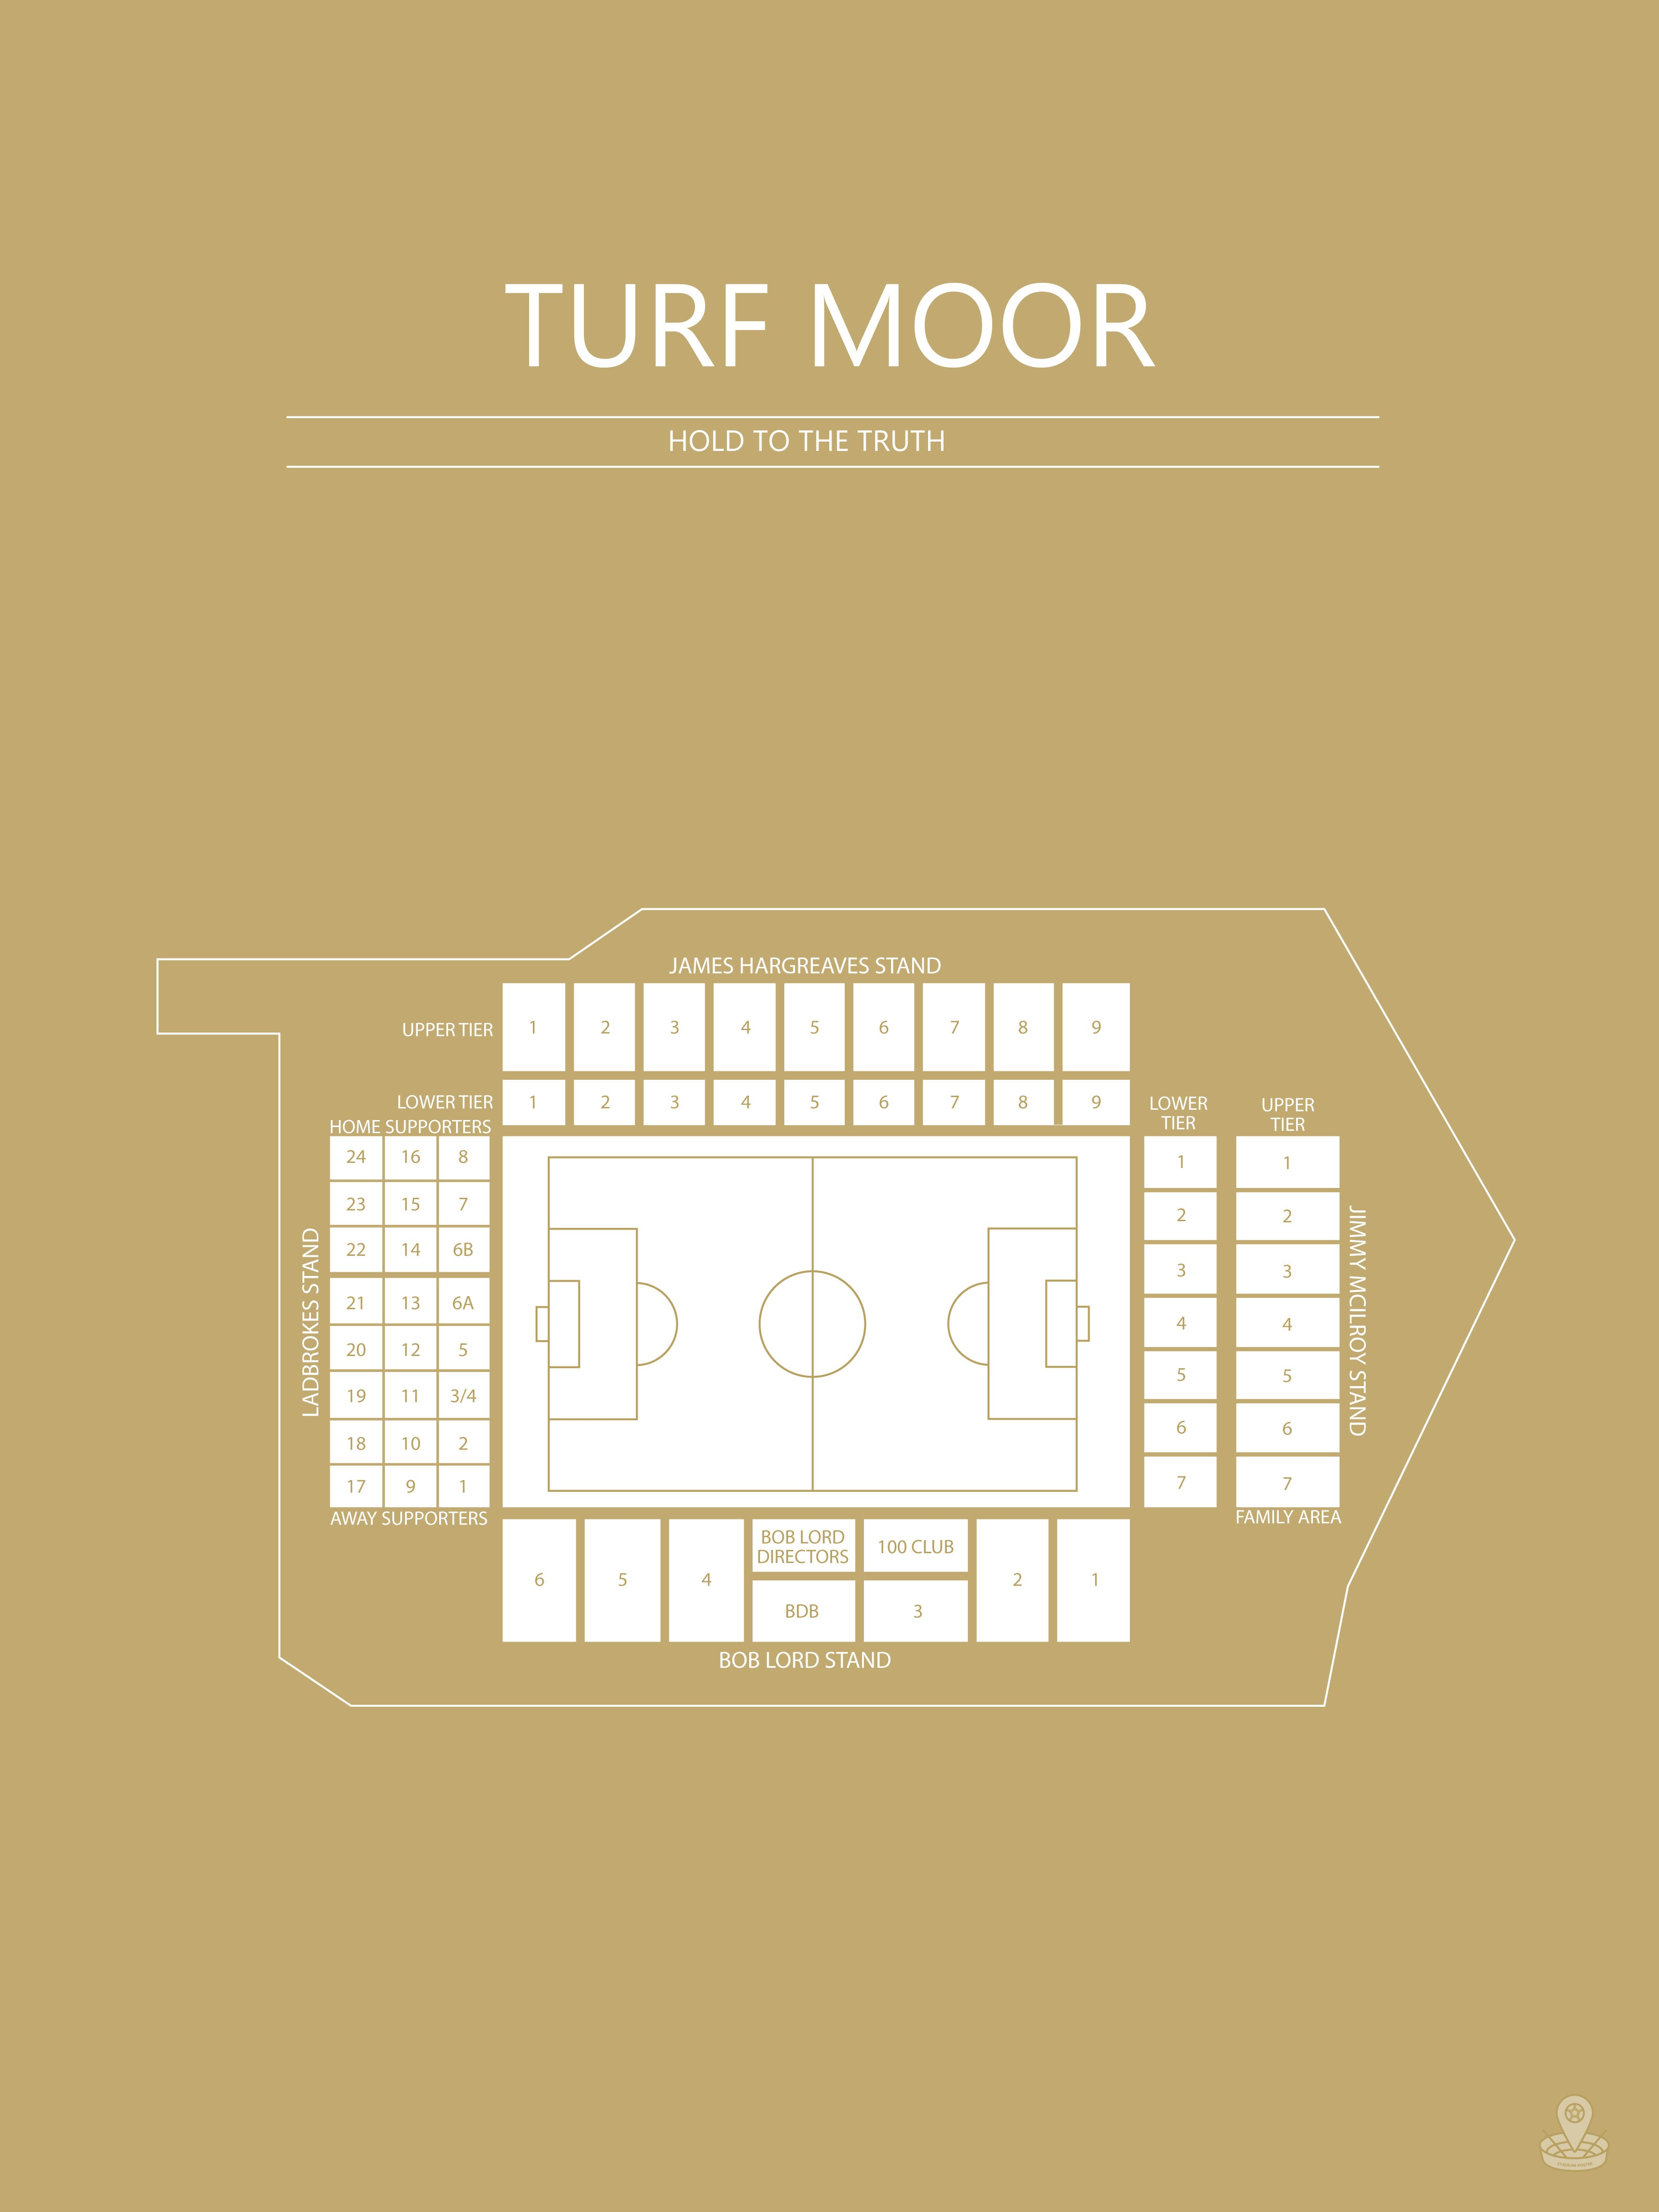 Fodbold plakat Burnley Turf Moor karry